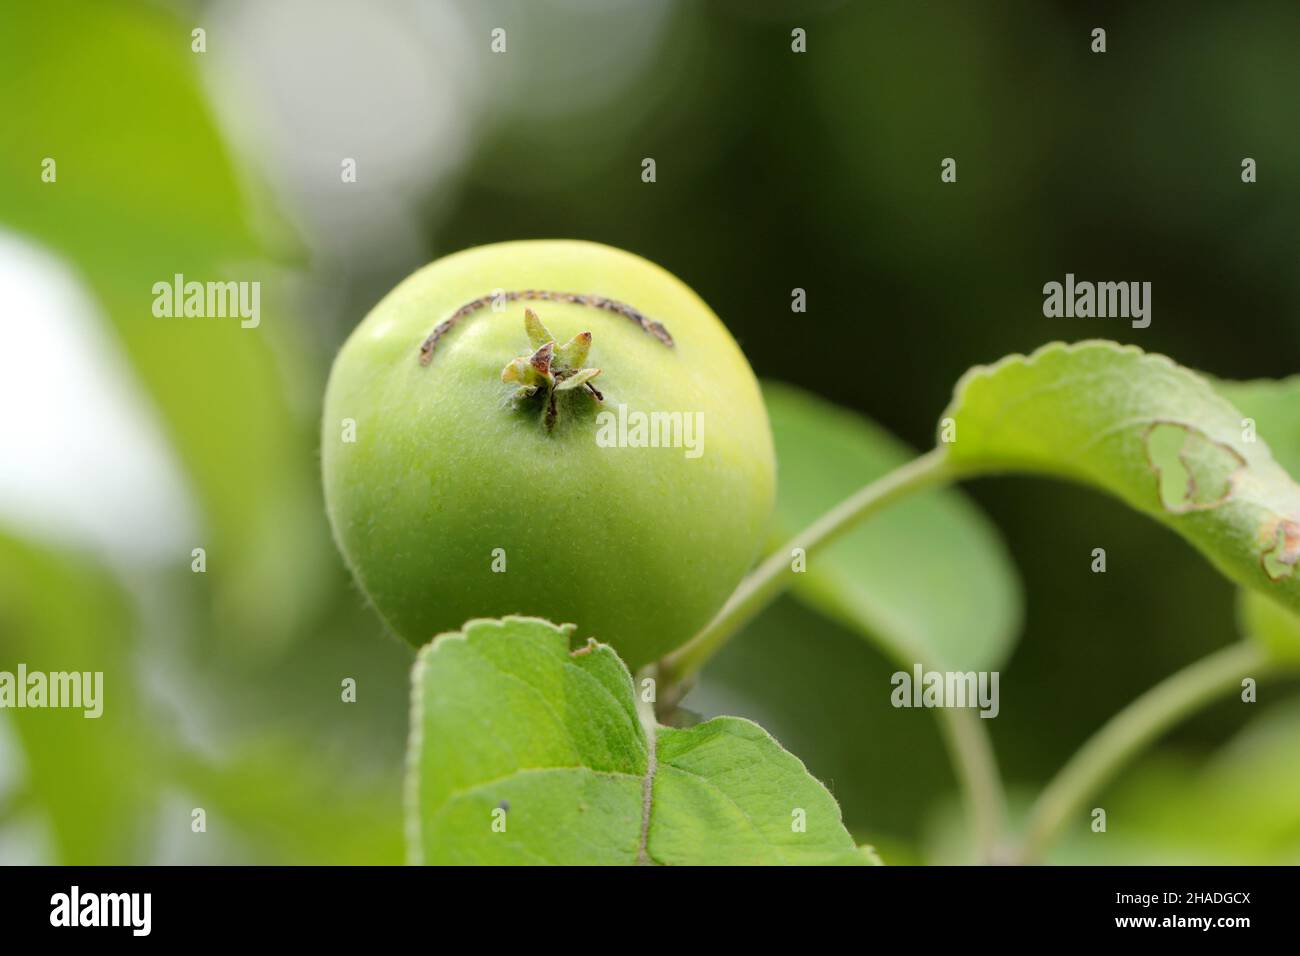 Apfel durch Larven der europäischen Apfelsäge beschädigt - Hoplocampa testudinea. Es ist einer der wichtigsten Schädlinge in Obstgärten und Gärten. Stockfoto